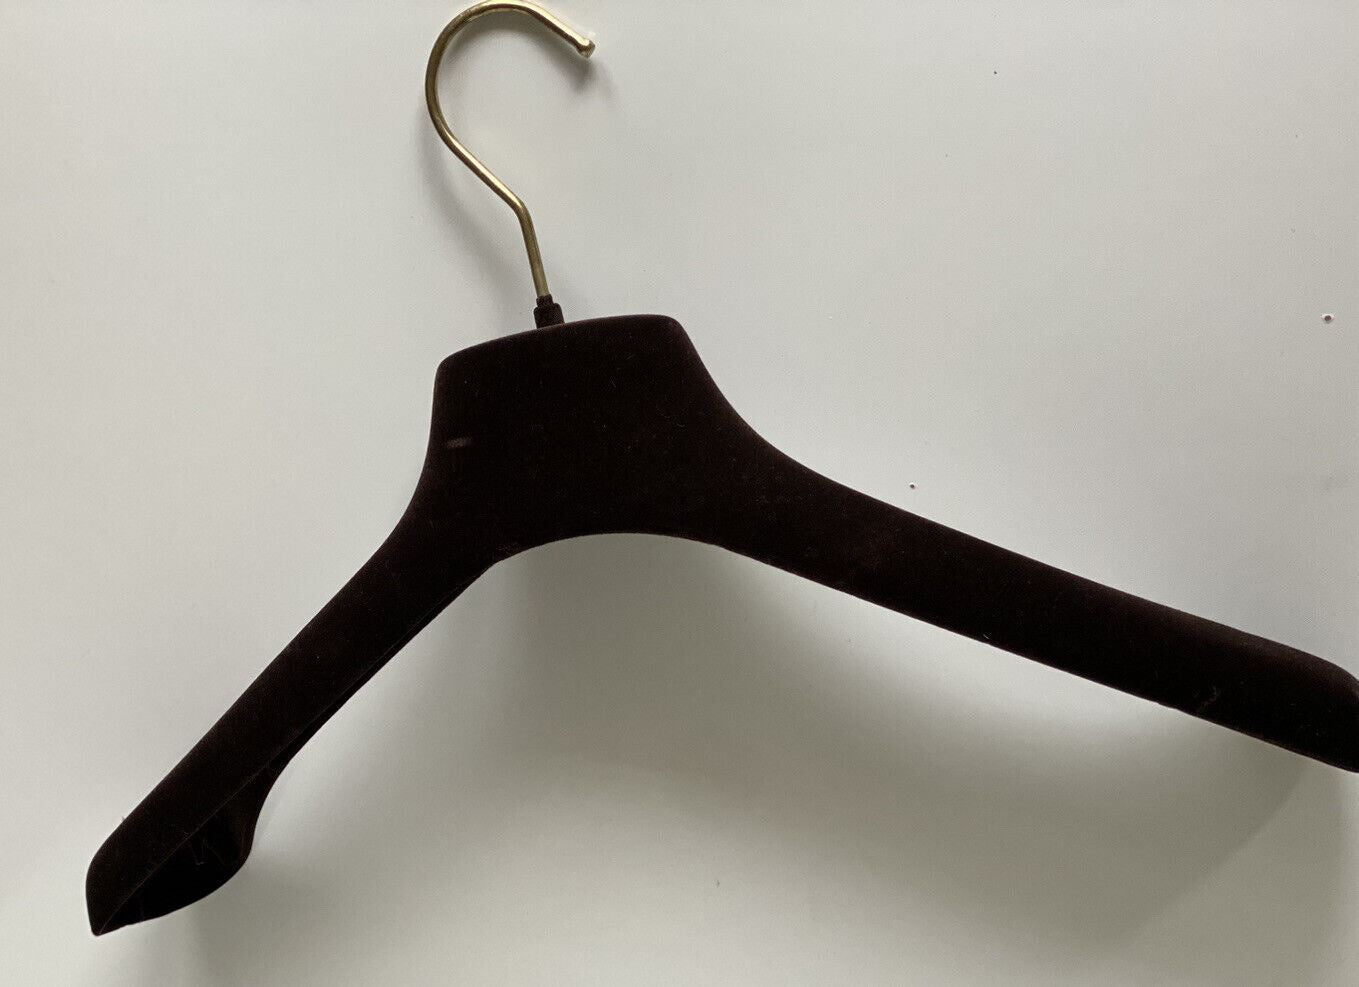 Bottega Veneta Brown Velvet Blazer Sweater Hangers with Gold Hardware 16.5x6.5x2